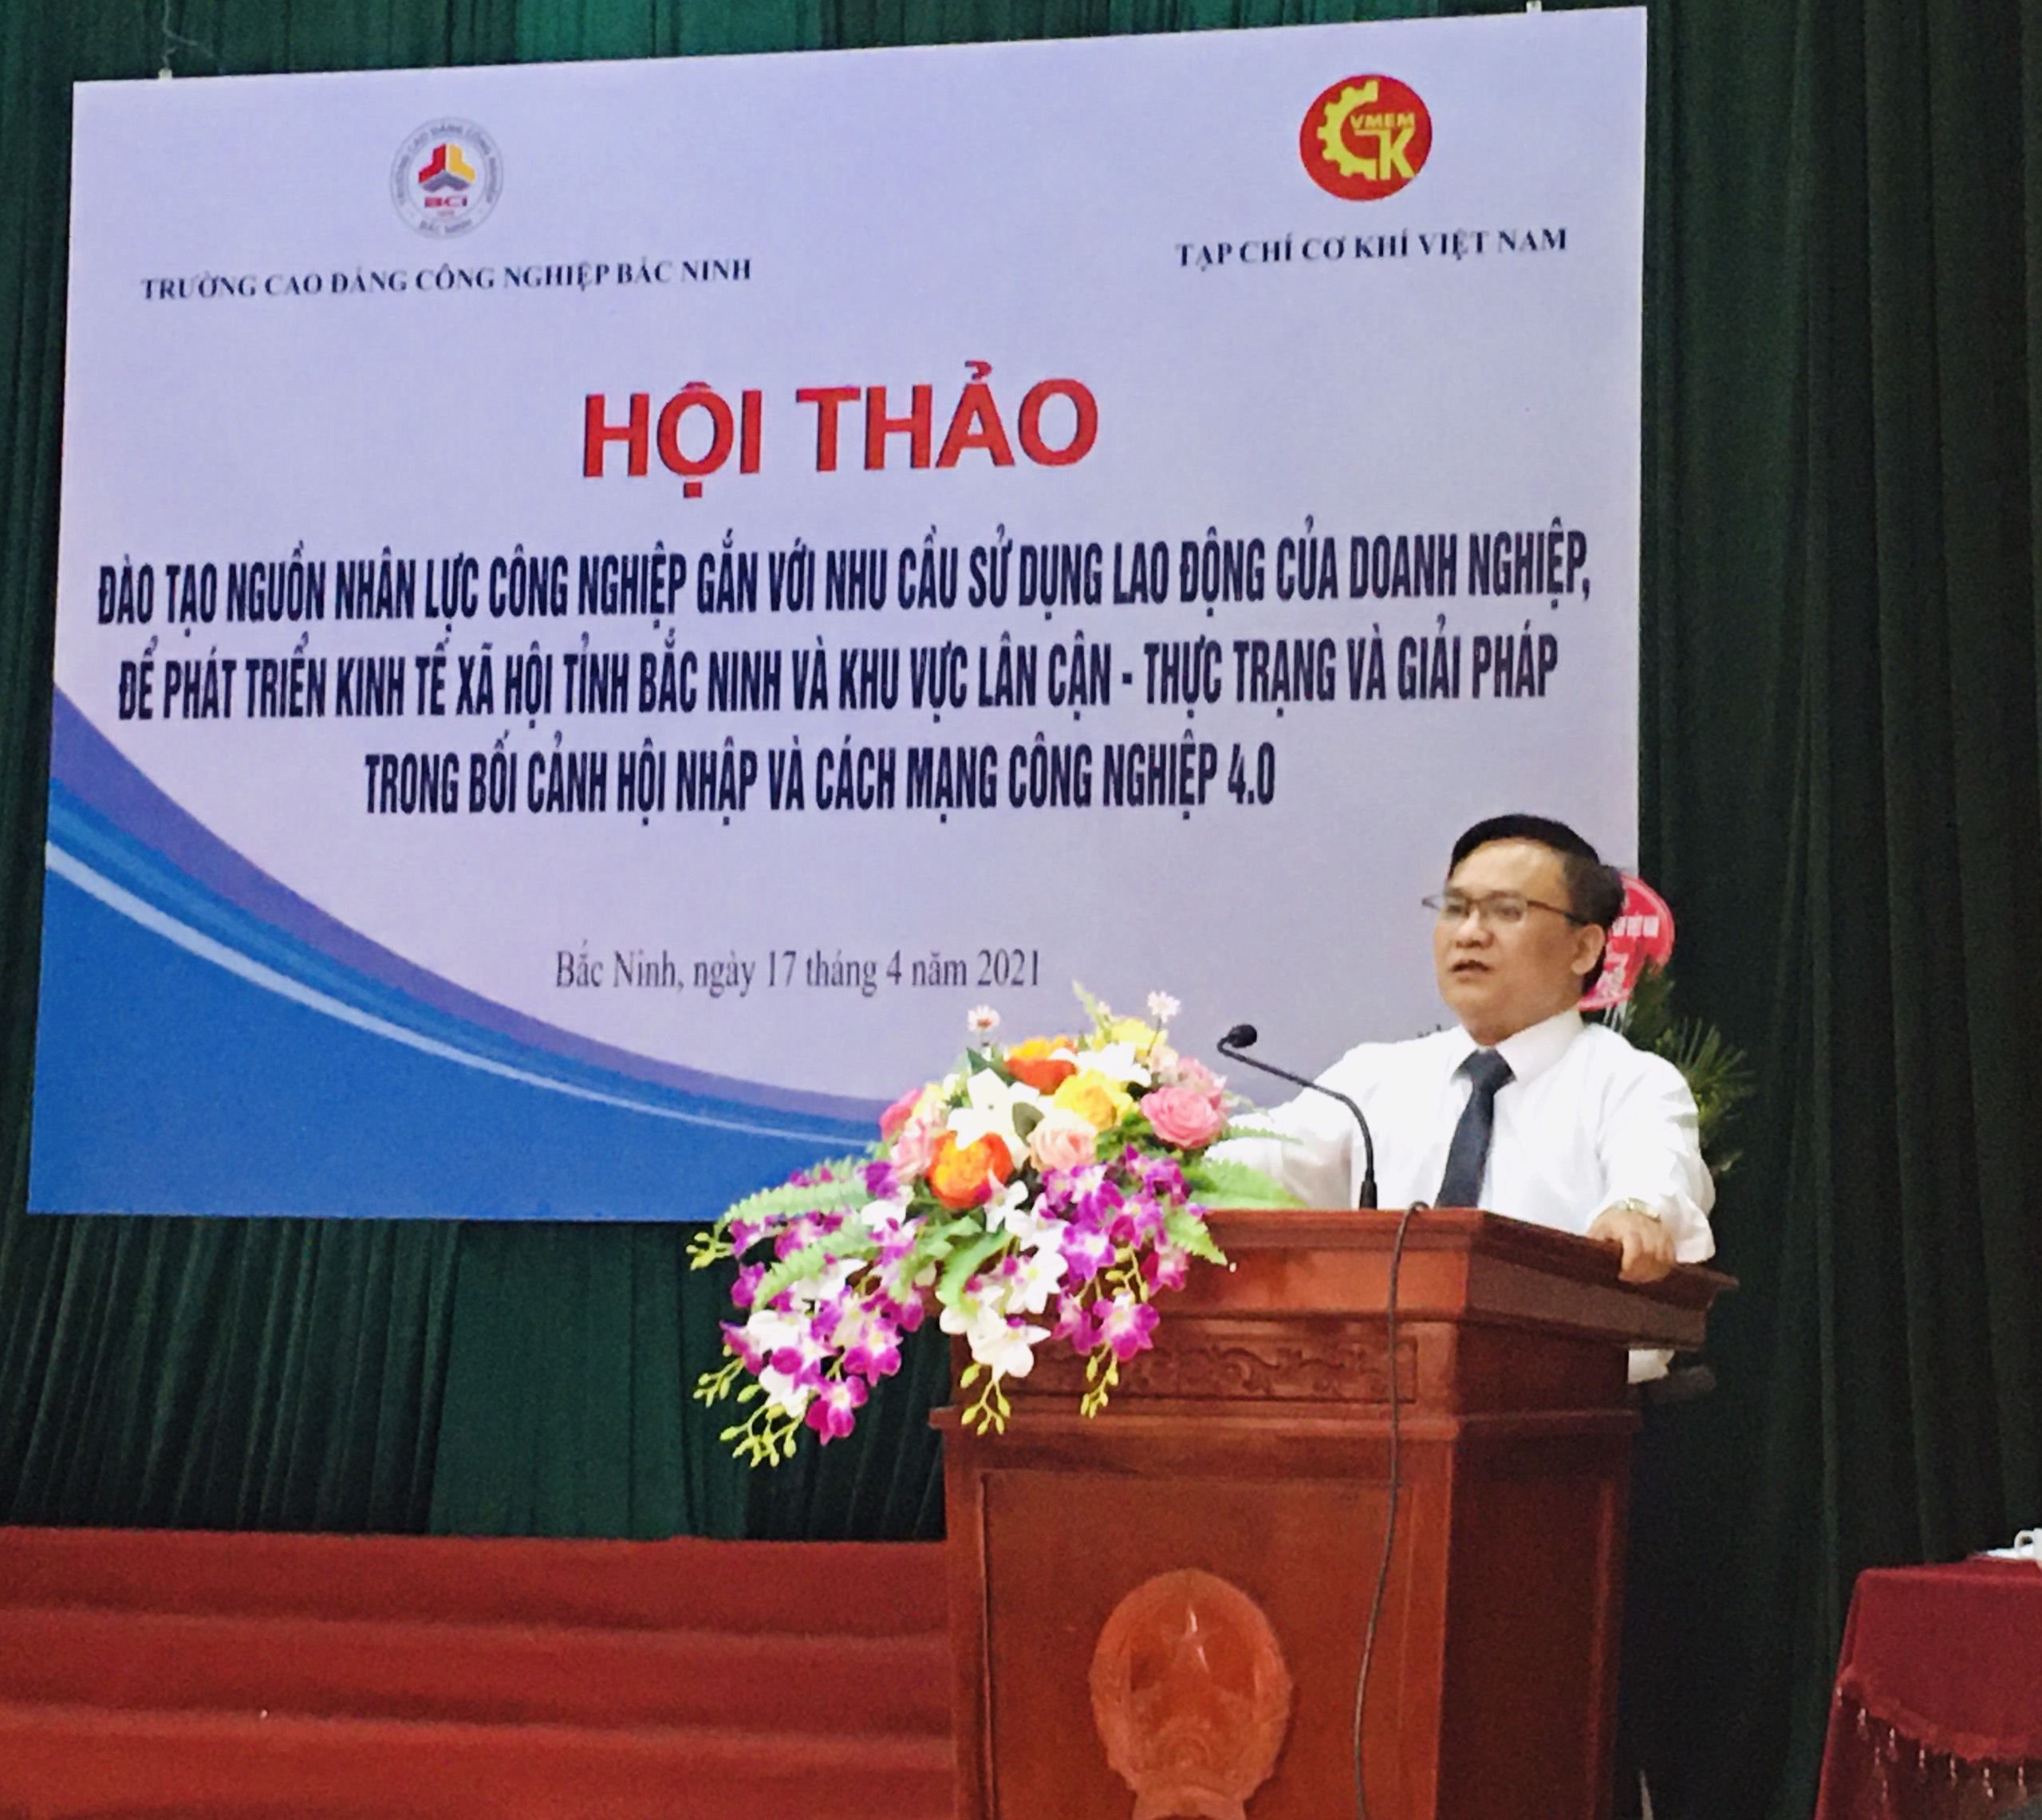 Hội thảo Đào tạo nguồn nhân lực Công nghiệp tại Bắc Ninh